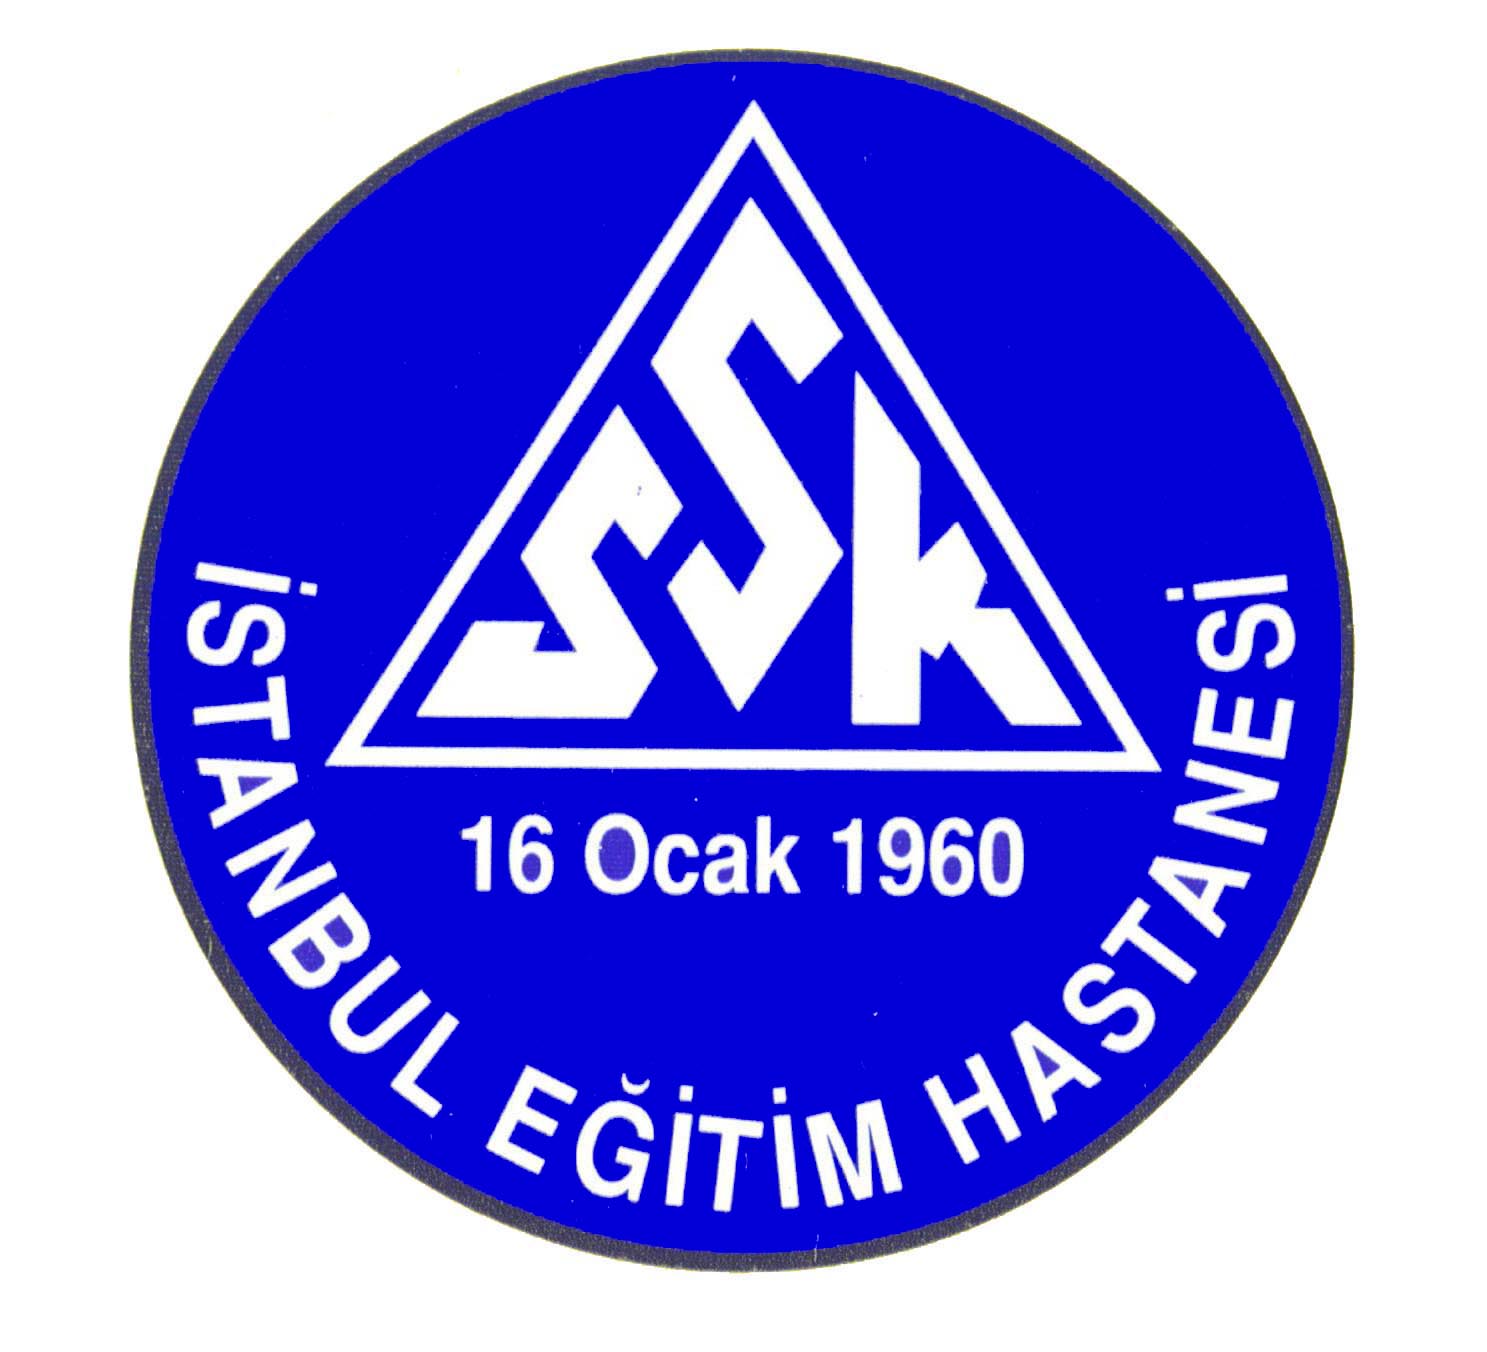 SSK stanbul Hastanesi logo.jpg (15855 bytes)